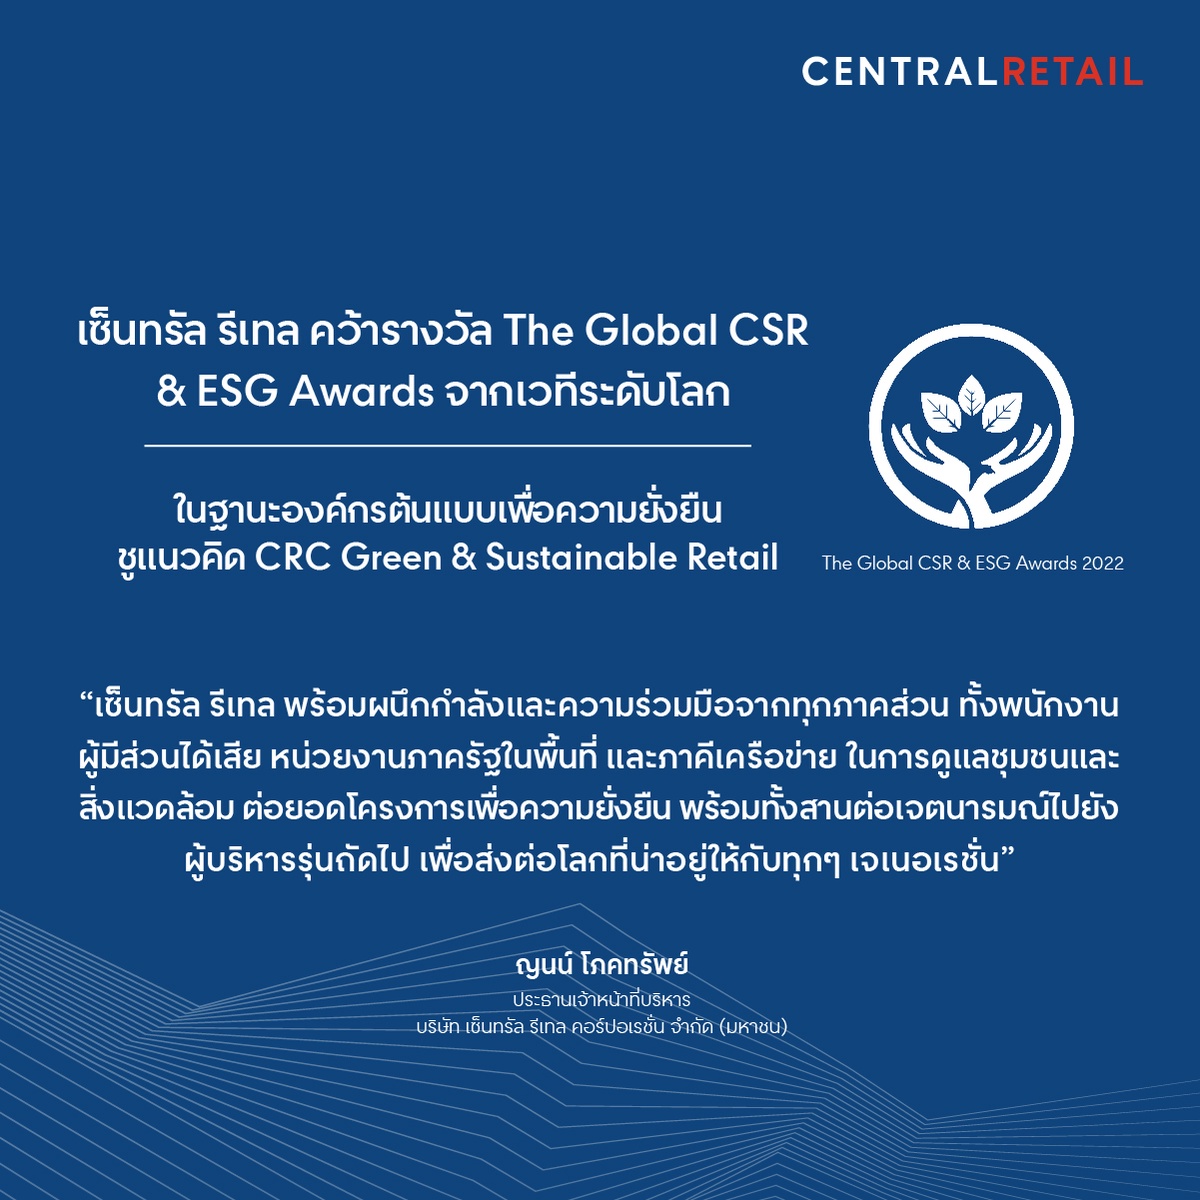 เซ็นทรัล รีเทล คว้ารางวัล The Global CSR ESG Awards จากเวทีระดับโลก ตอกย้ำการเป็นองค์กรต้นแบบเพื่อความยั่งยืน ชู CRC Green Sustainable Retail แห่งแรกของเอเชีย